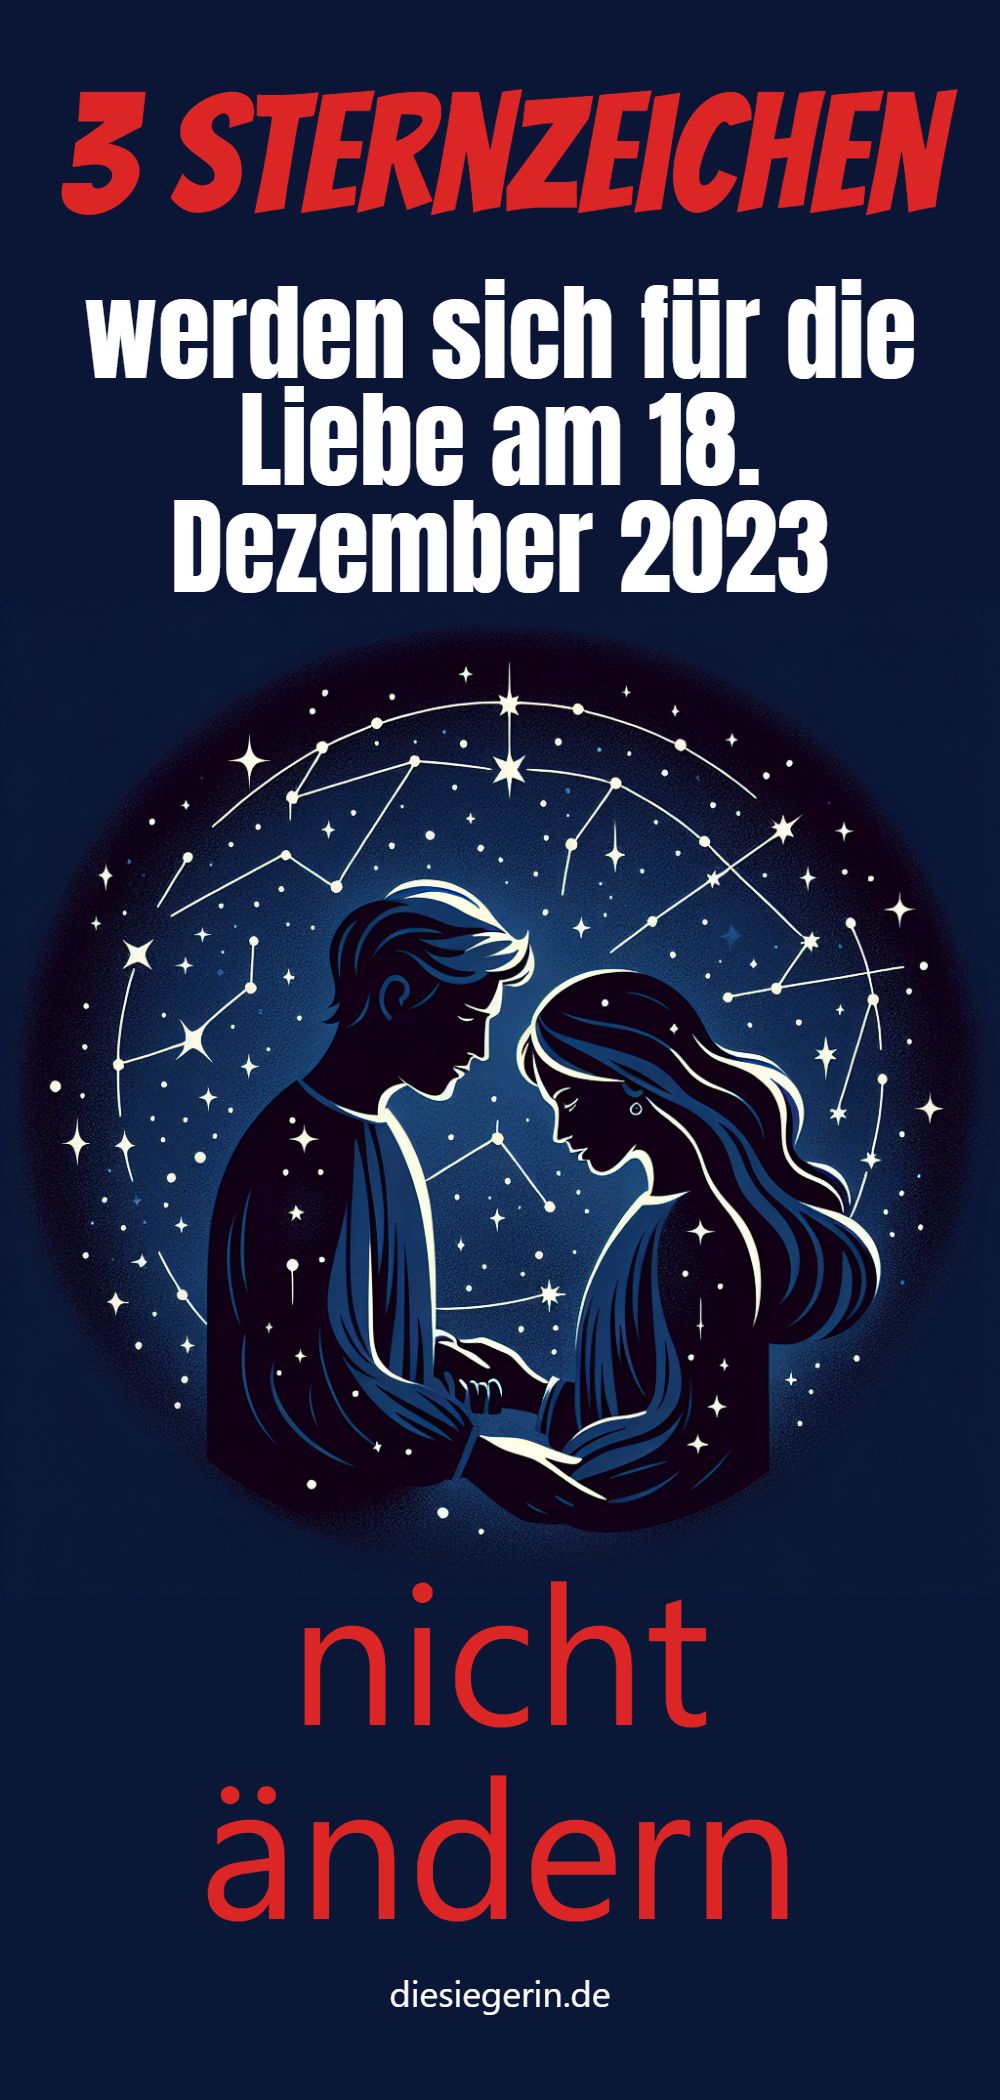 3 Sternzeichen werden sich für die Liebe am 18. Dezember 2023 nicht ändern